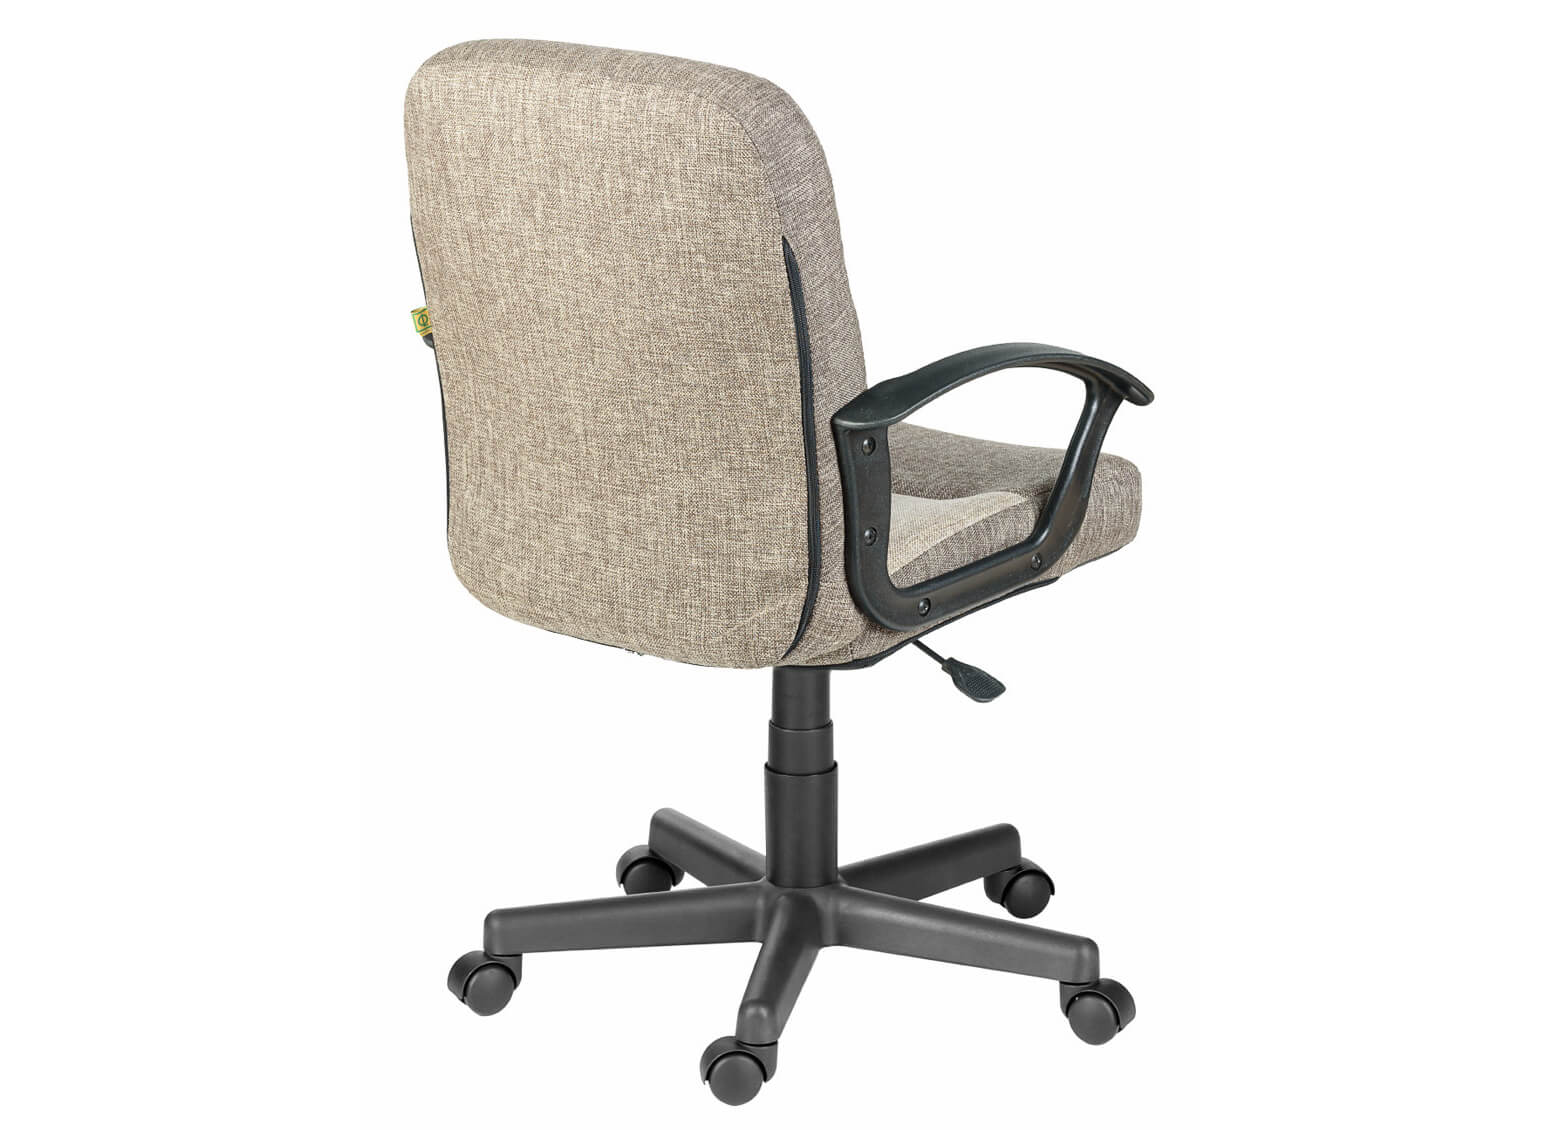 Компьютерное кресло Вейтон Home Ультра – Т.серый/Кирпичный (Ткань КФ-13/КФ-28)